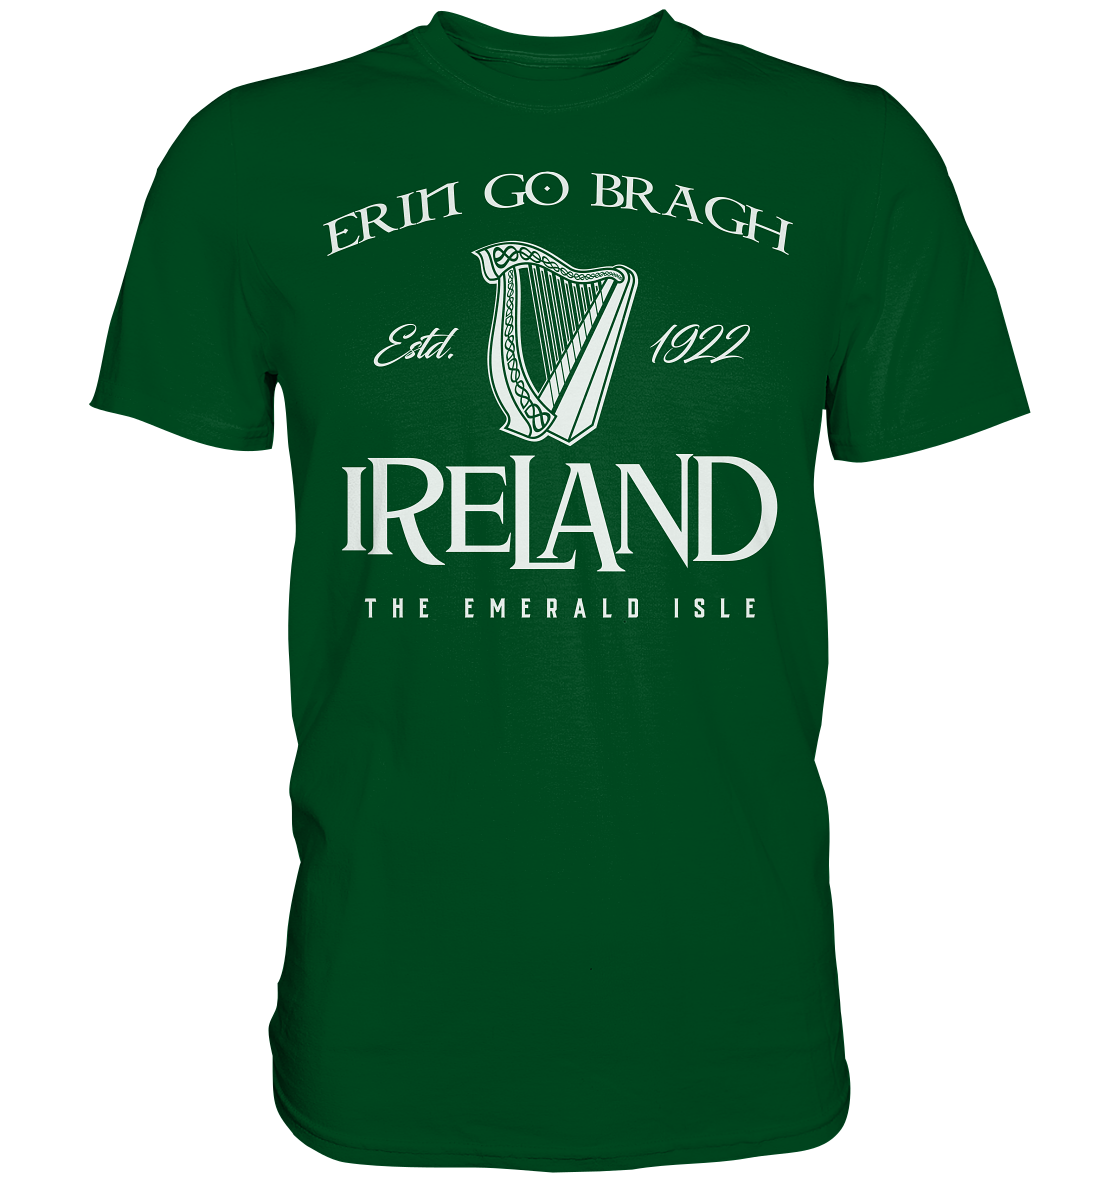 Ireland "Erin Go Bragh / The Emerald Isle" - Premium Shirt